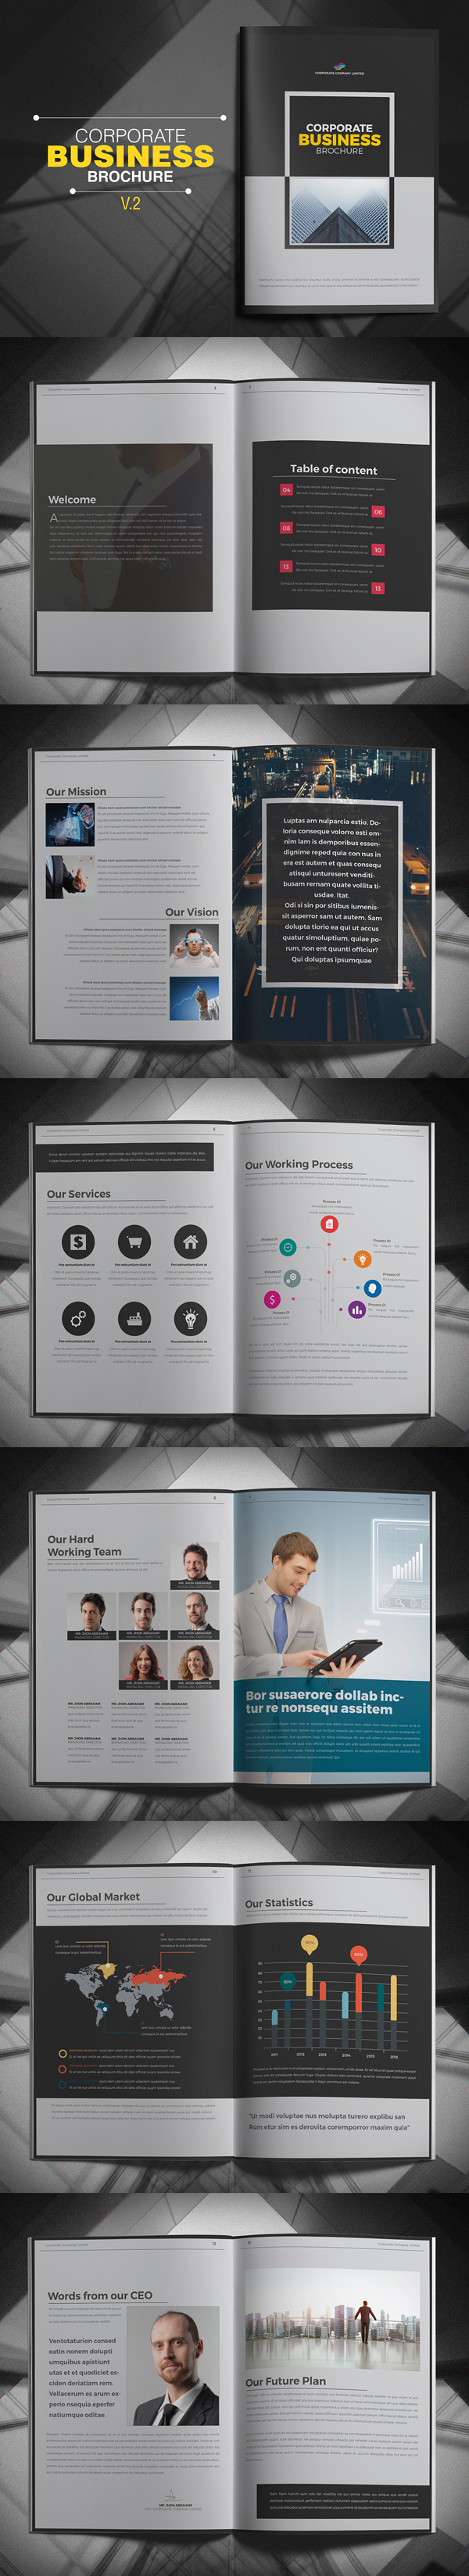 Corporate Business Brochure Design Template